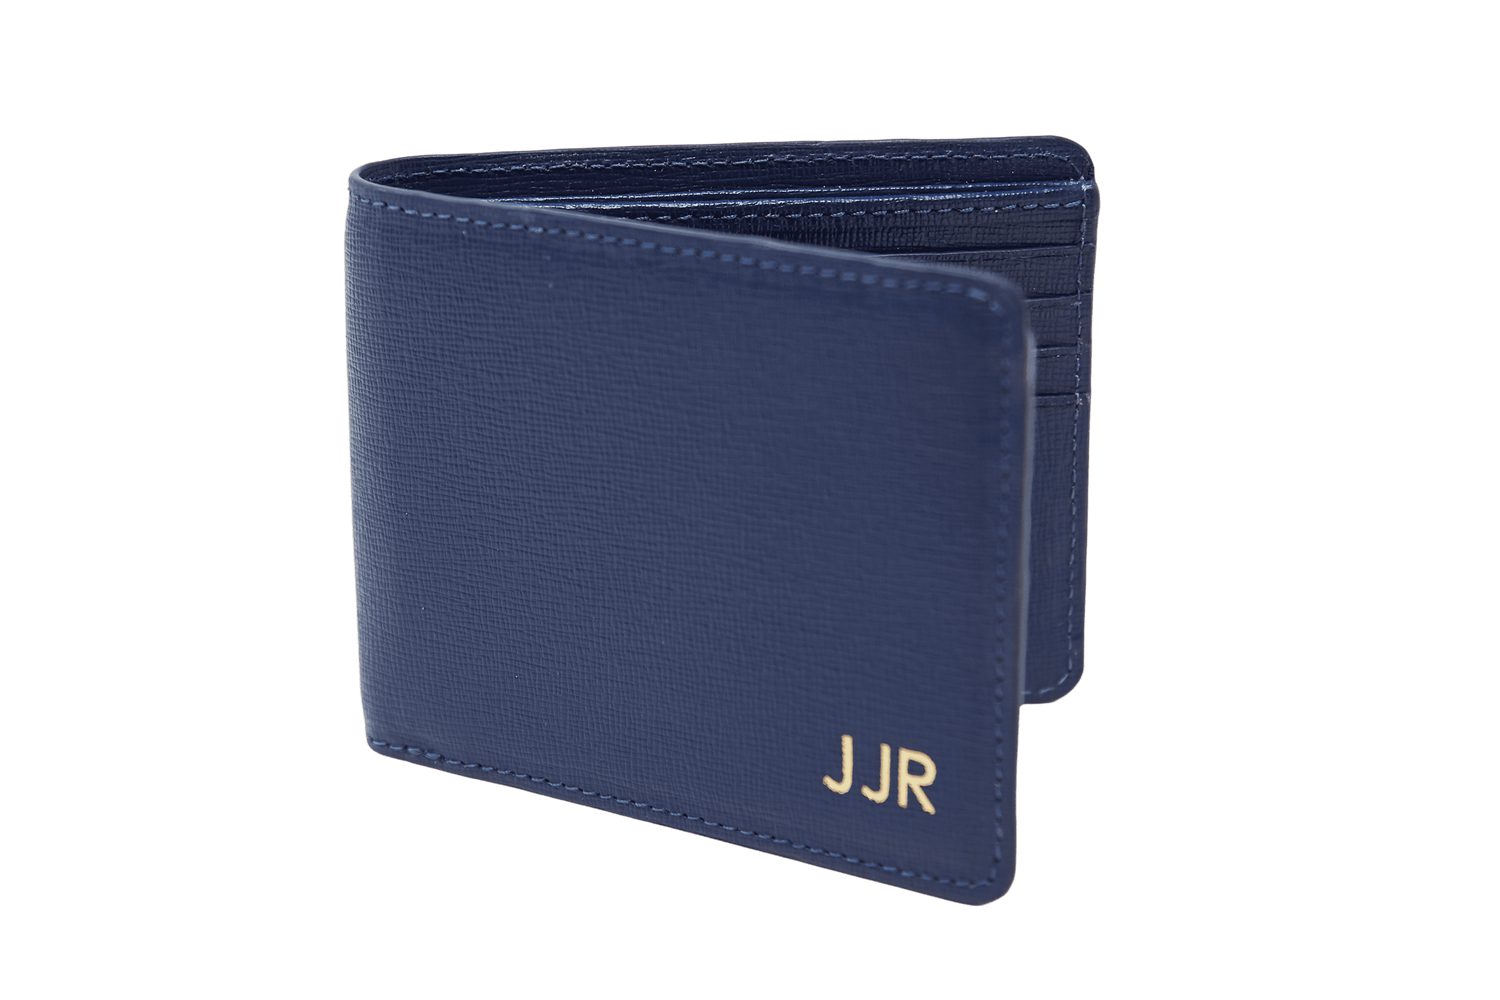 Billetera de cuero color azul con 3 iniciales de personalización , tiene compartimentos para billetes y documentos.